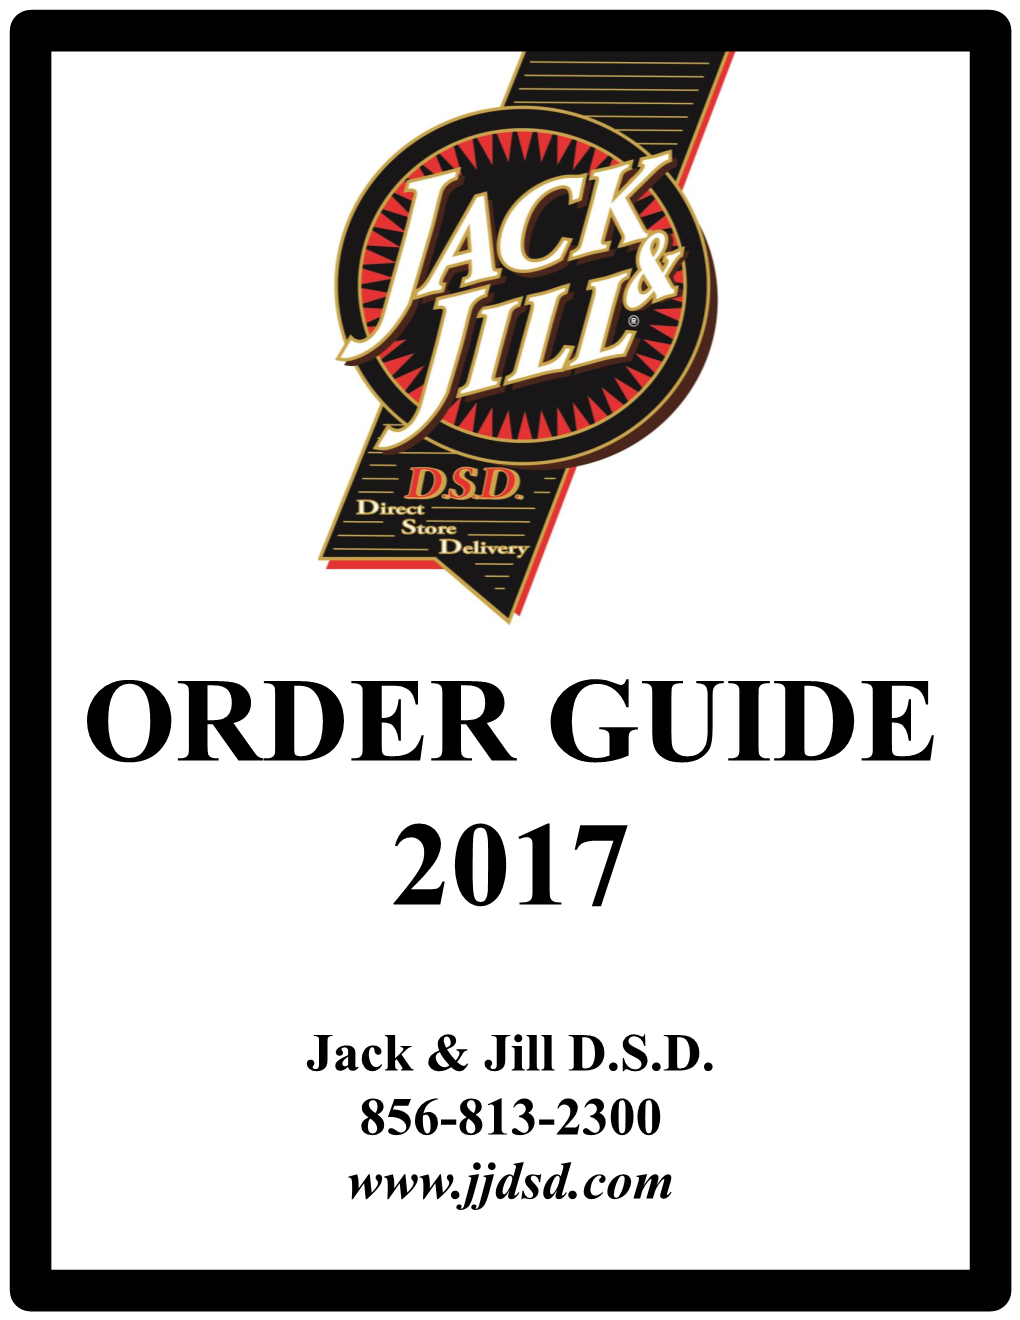 Jack & Jill D.S.D. 856-813-2300